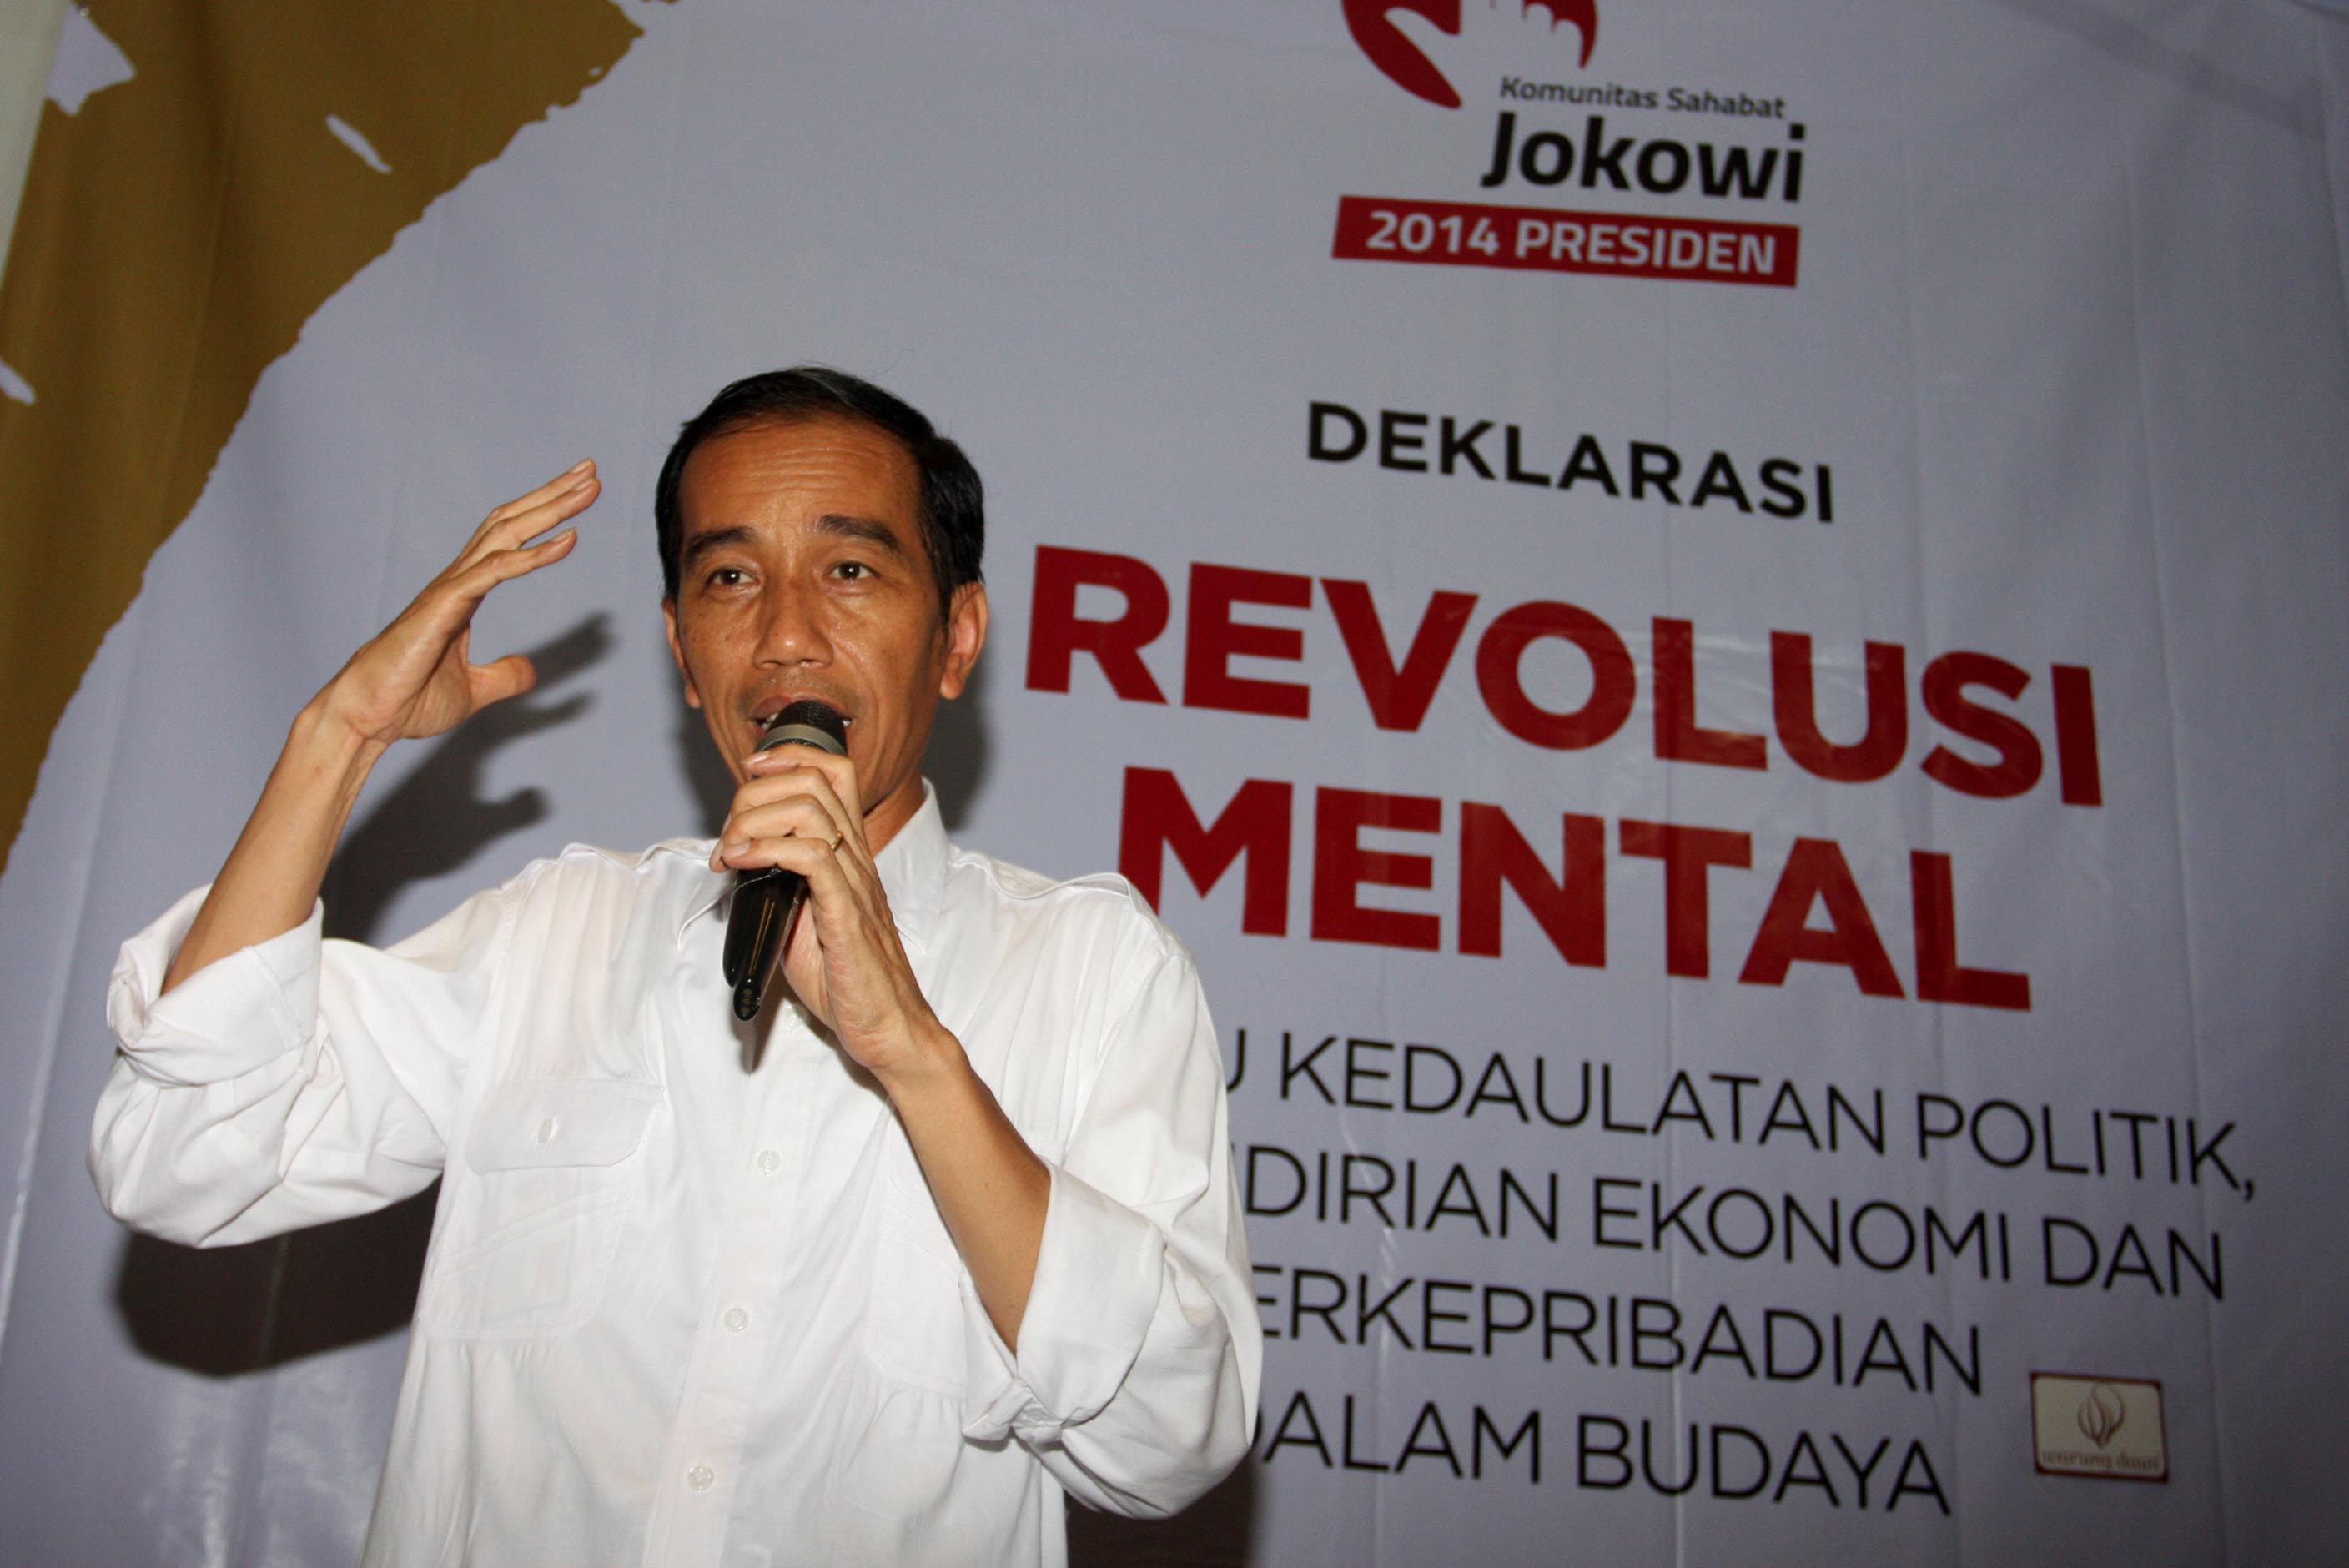 Mengurai Revolusi Mental Ala Komunis dan Revolusi Mental Ala Jokowi